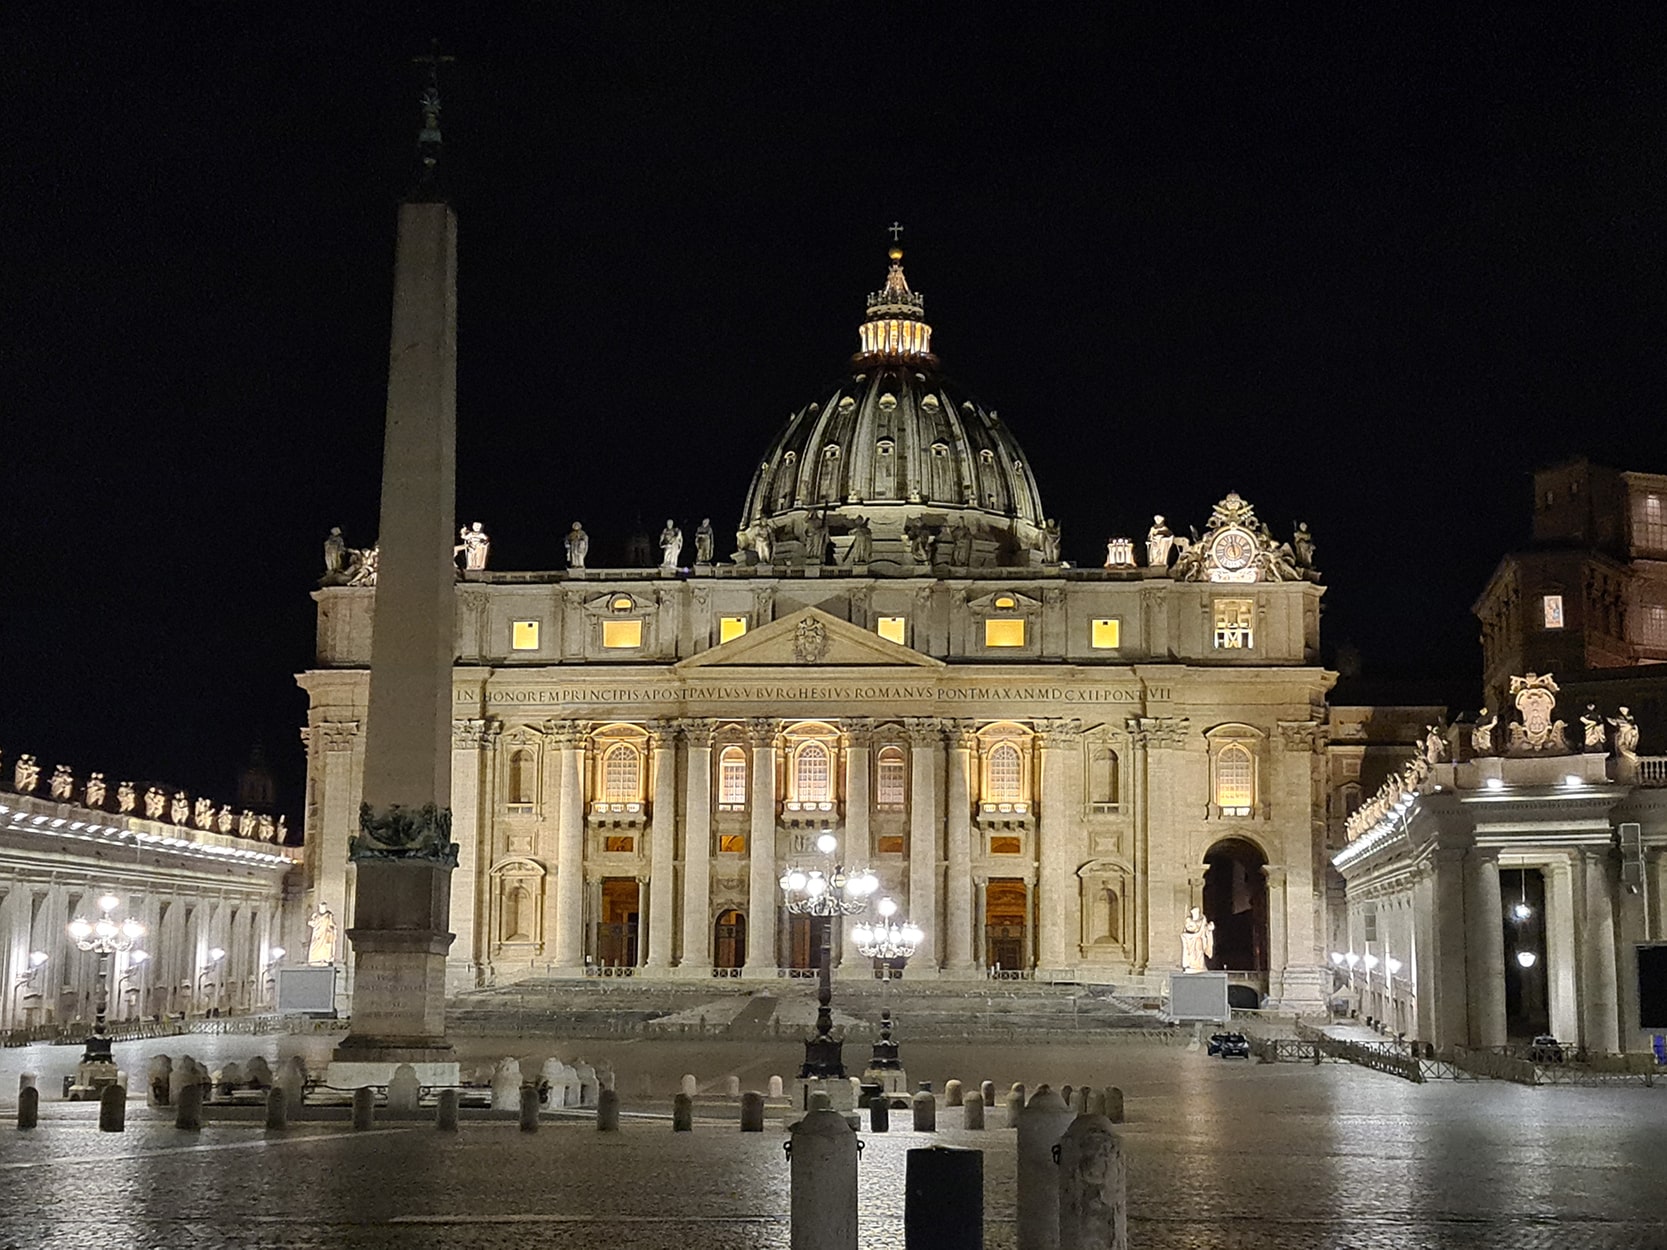 Una foto della Basilica di San Pietro di sera, illuminata e vuota, con l'obelisco in primo piano e il cupolone in bella vista.